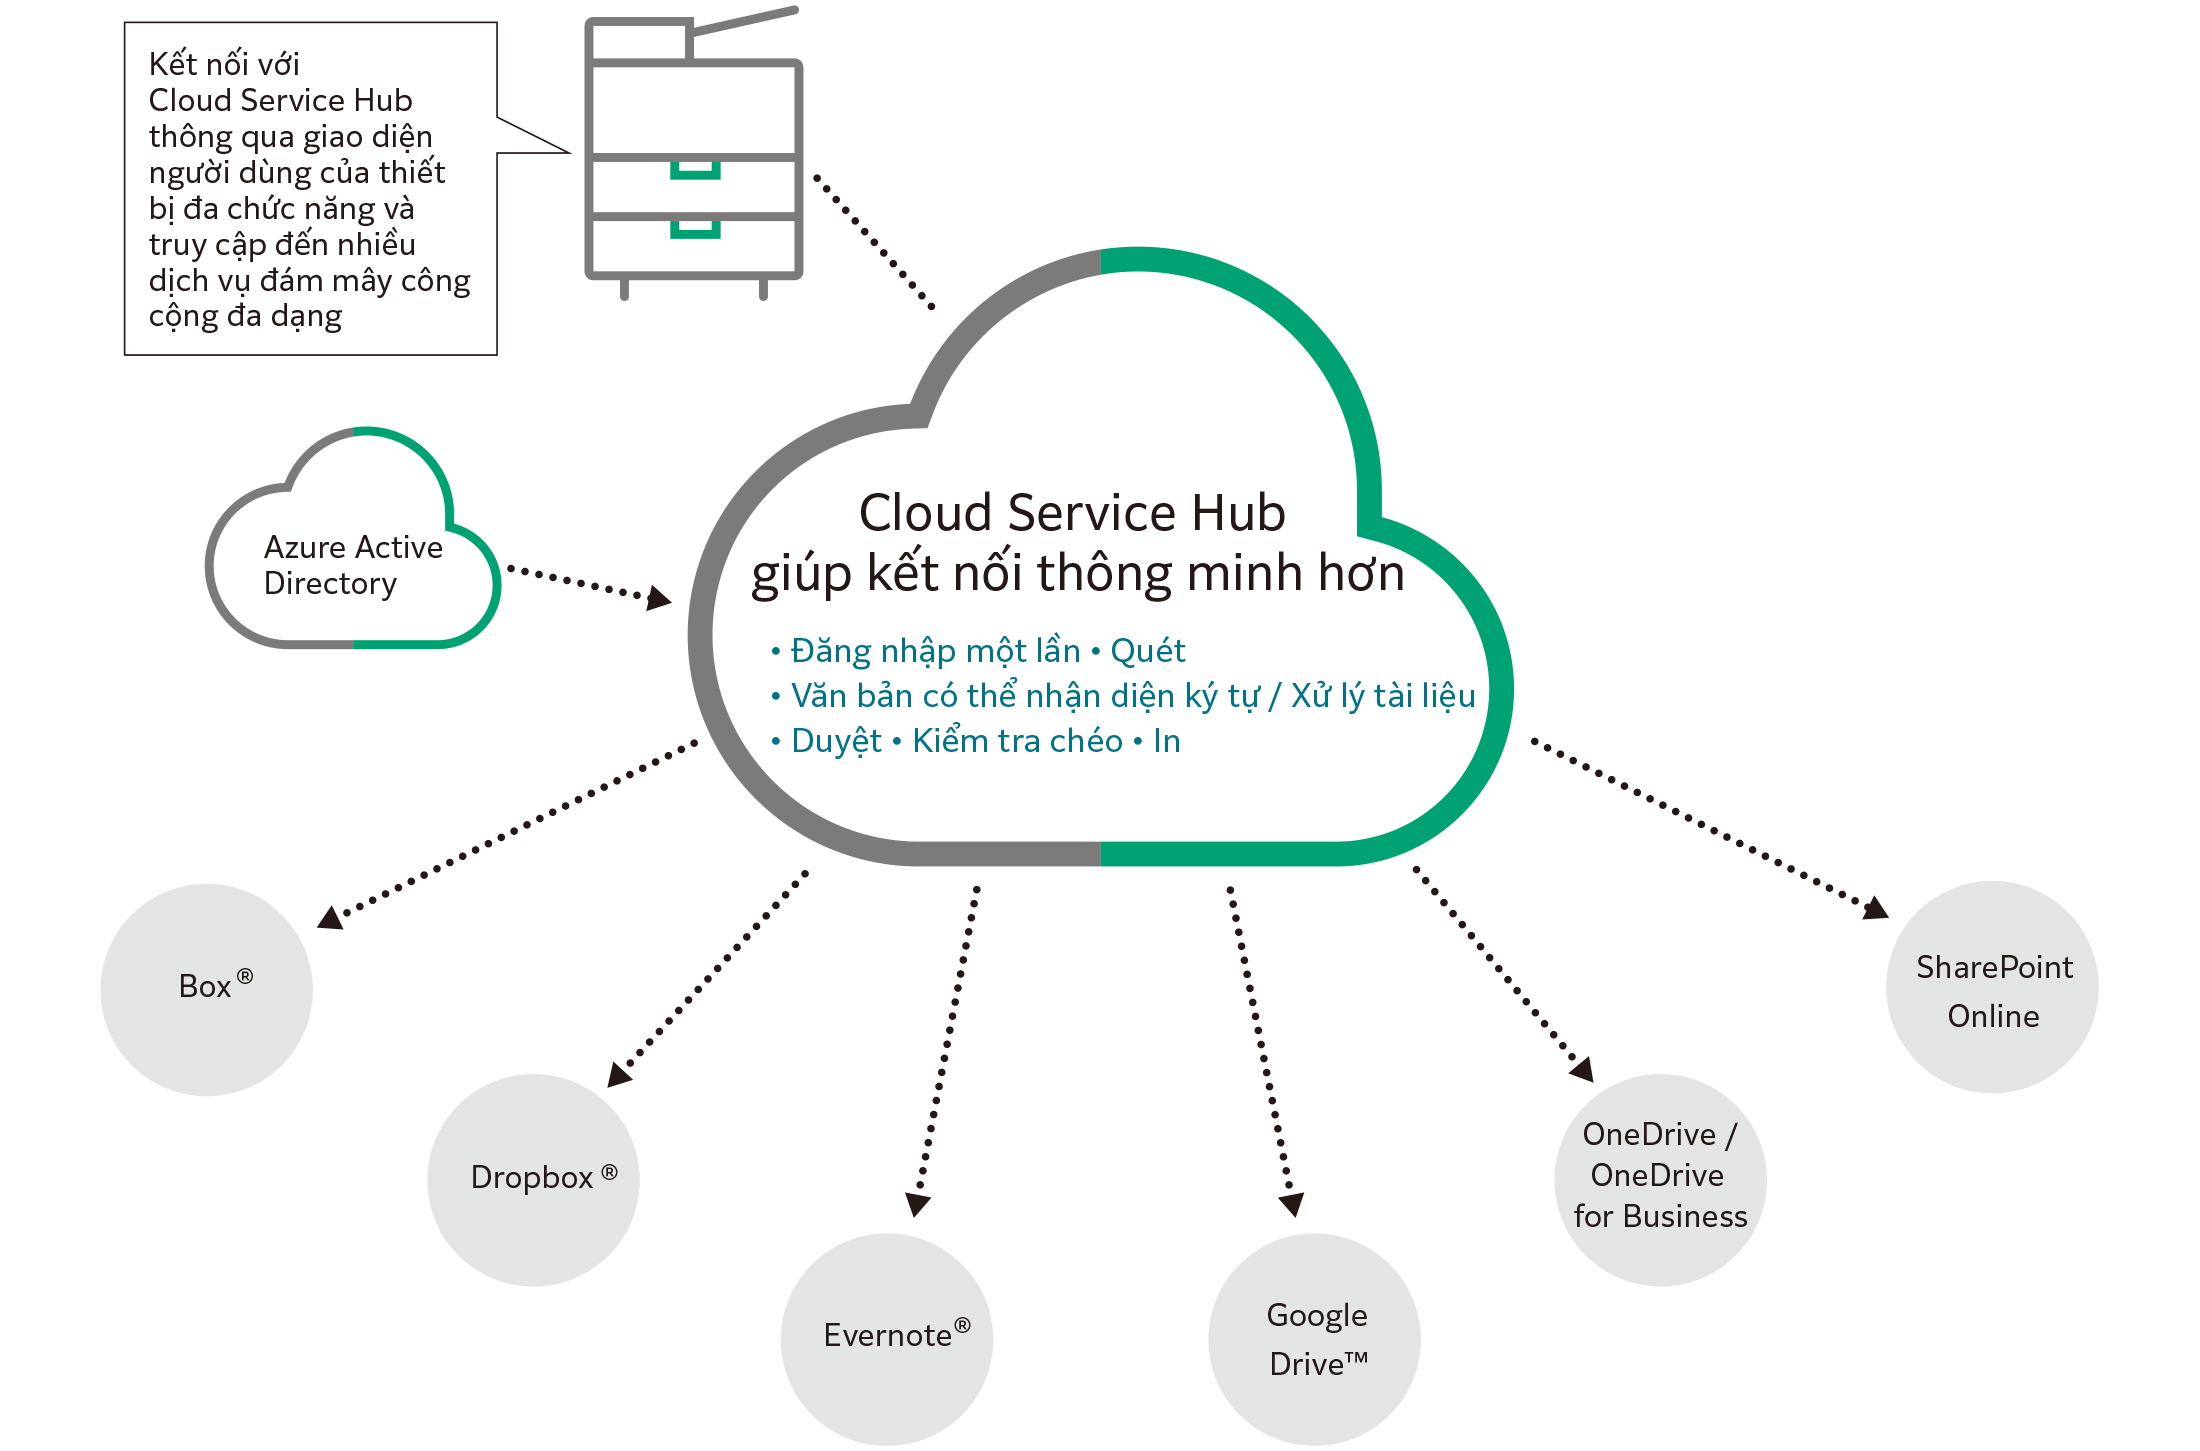 Cloud Service Hub là gì?